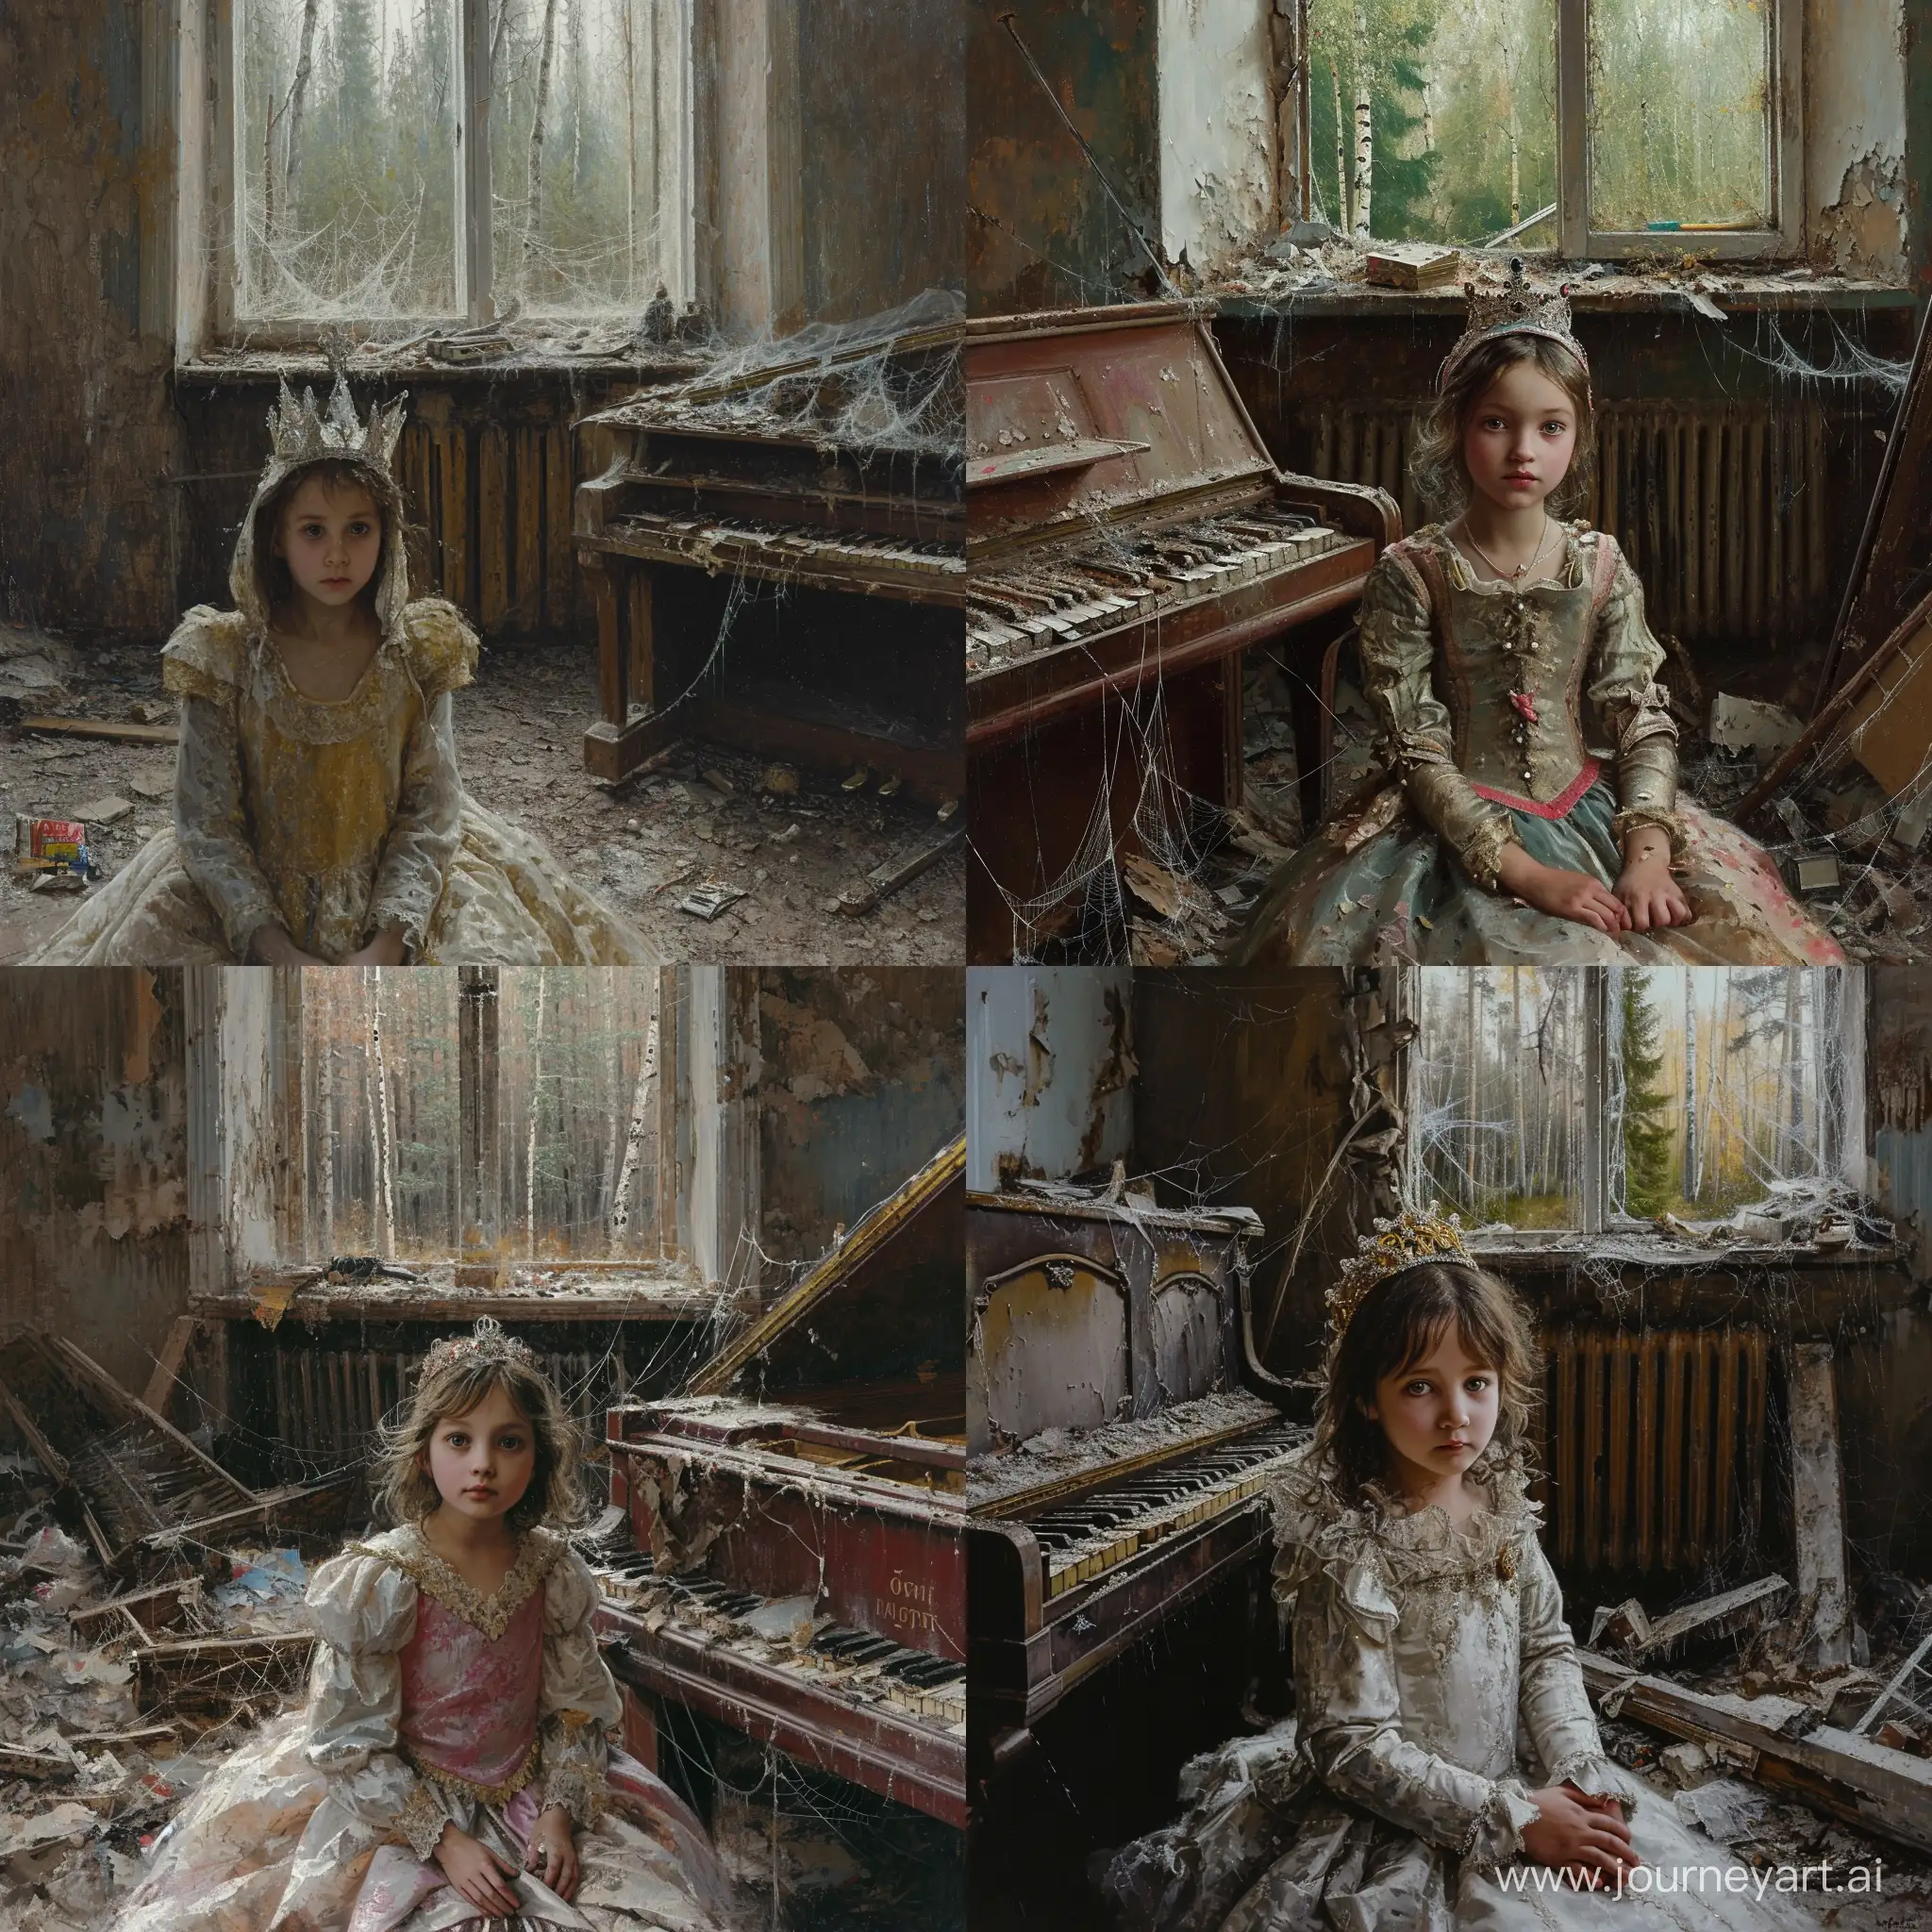 красивая 12-летняя девочка в костюме принцессы сидит в советской комнате. везде грязь. мусор. сломанное пианино. паутина. окно, из которого виден лес. девочка хитрая, ехидная. живопись.
